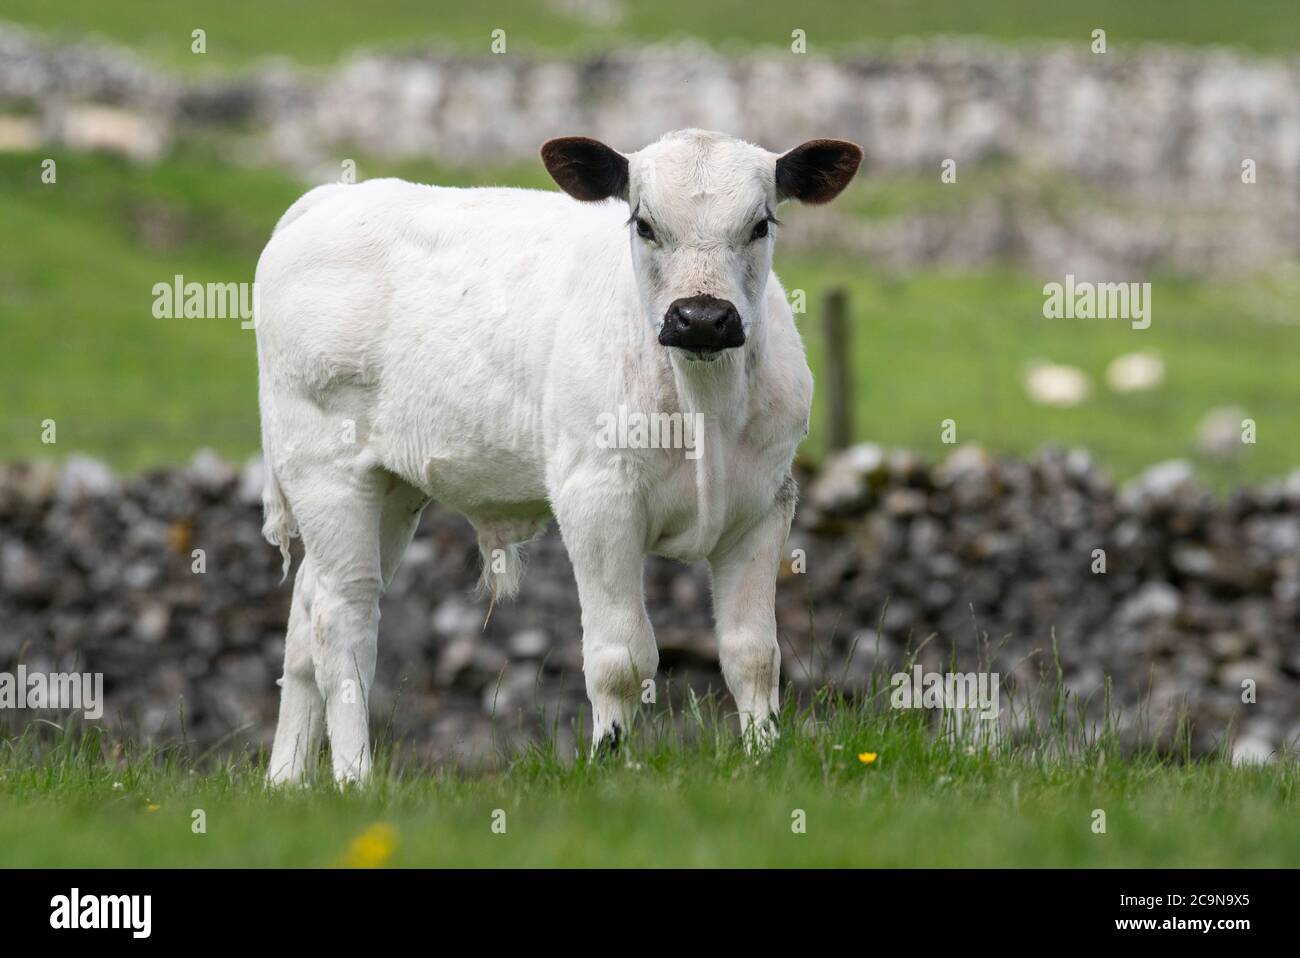 British White cattle grazing in upland pasture Stock Photo